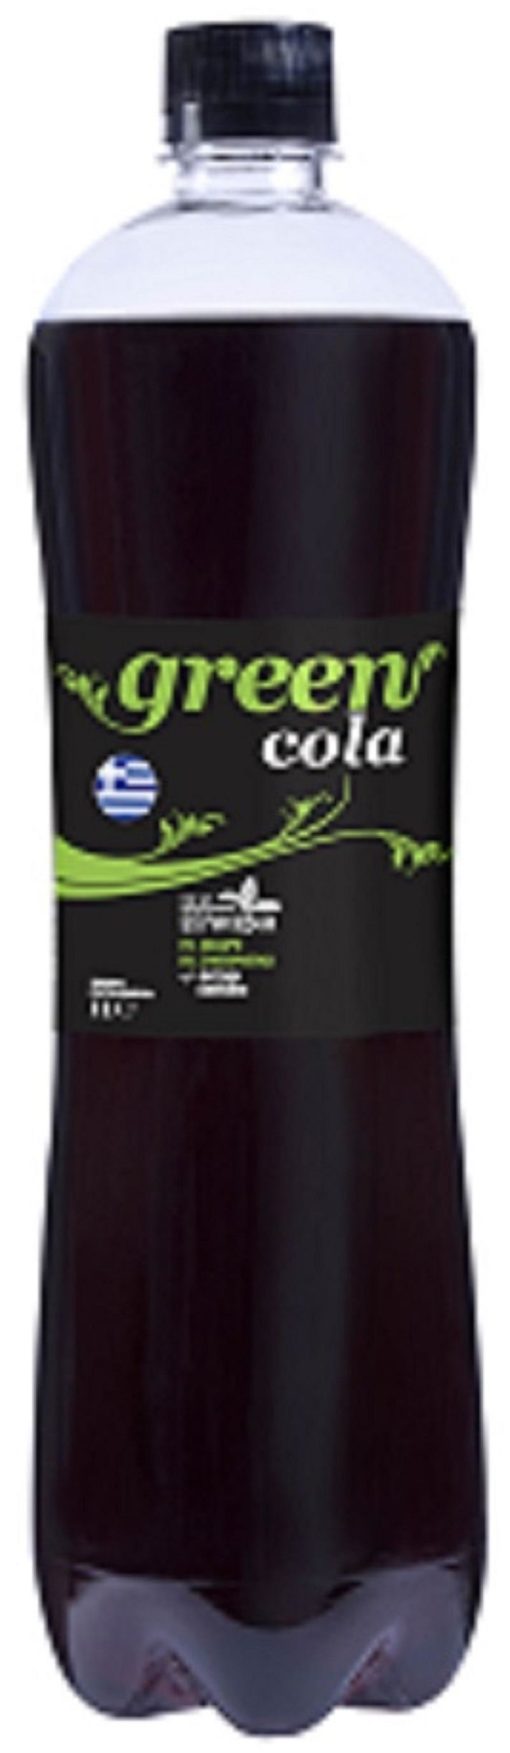 Αναψυκτικό Green Cola (1 lt)